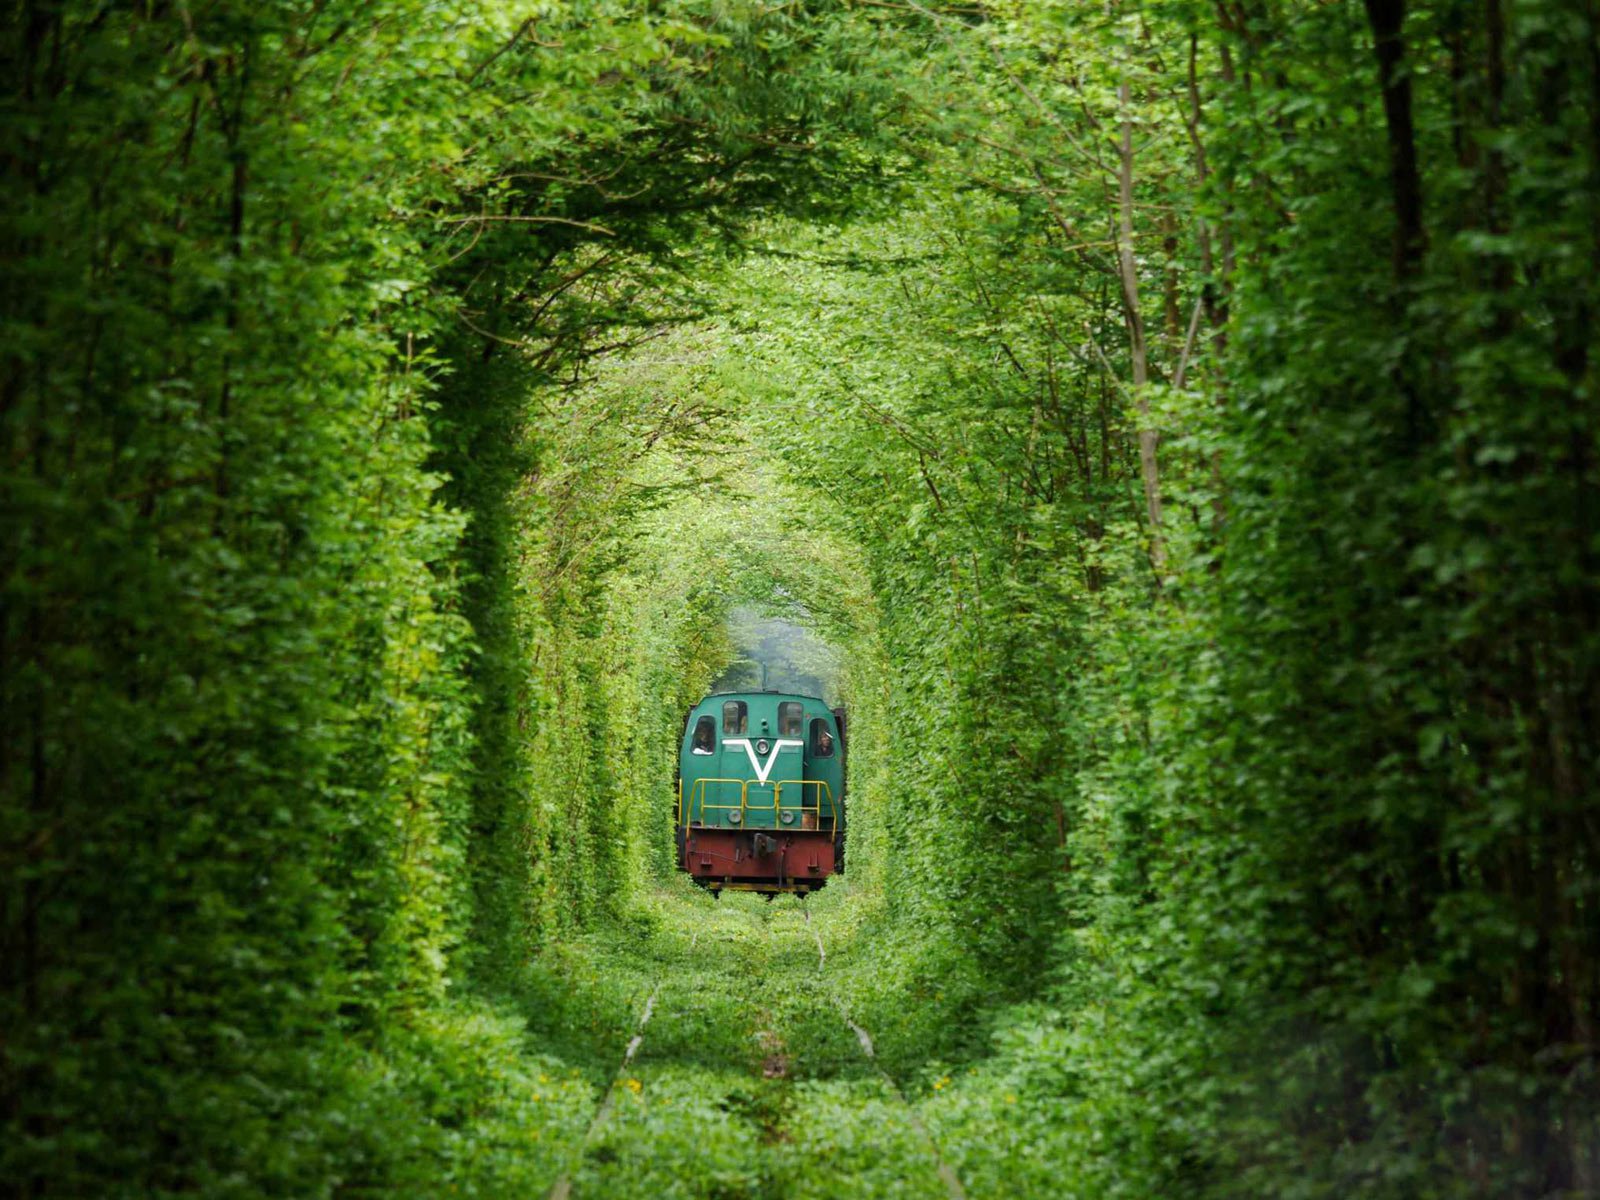 Tàu lửa chạy xuyên qua đường hầm tình yêu.